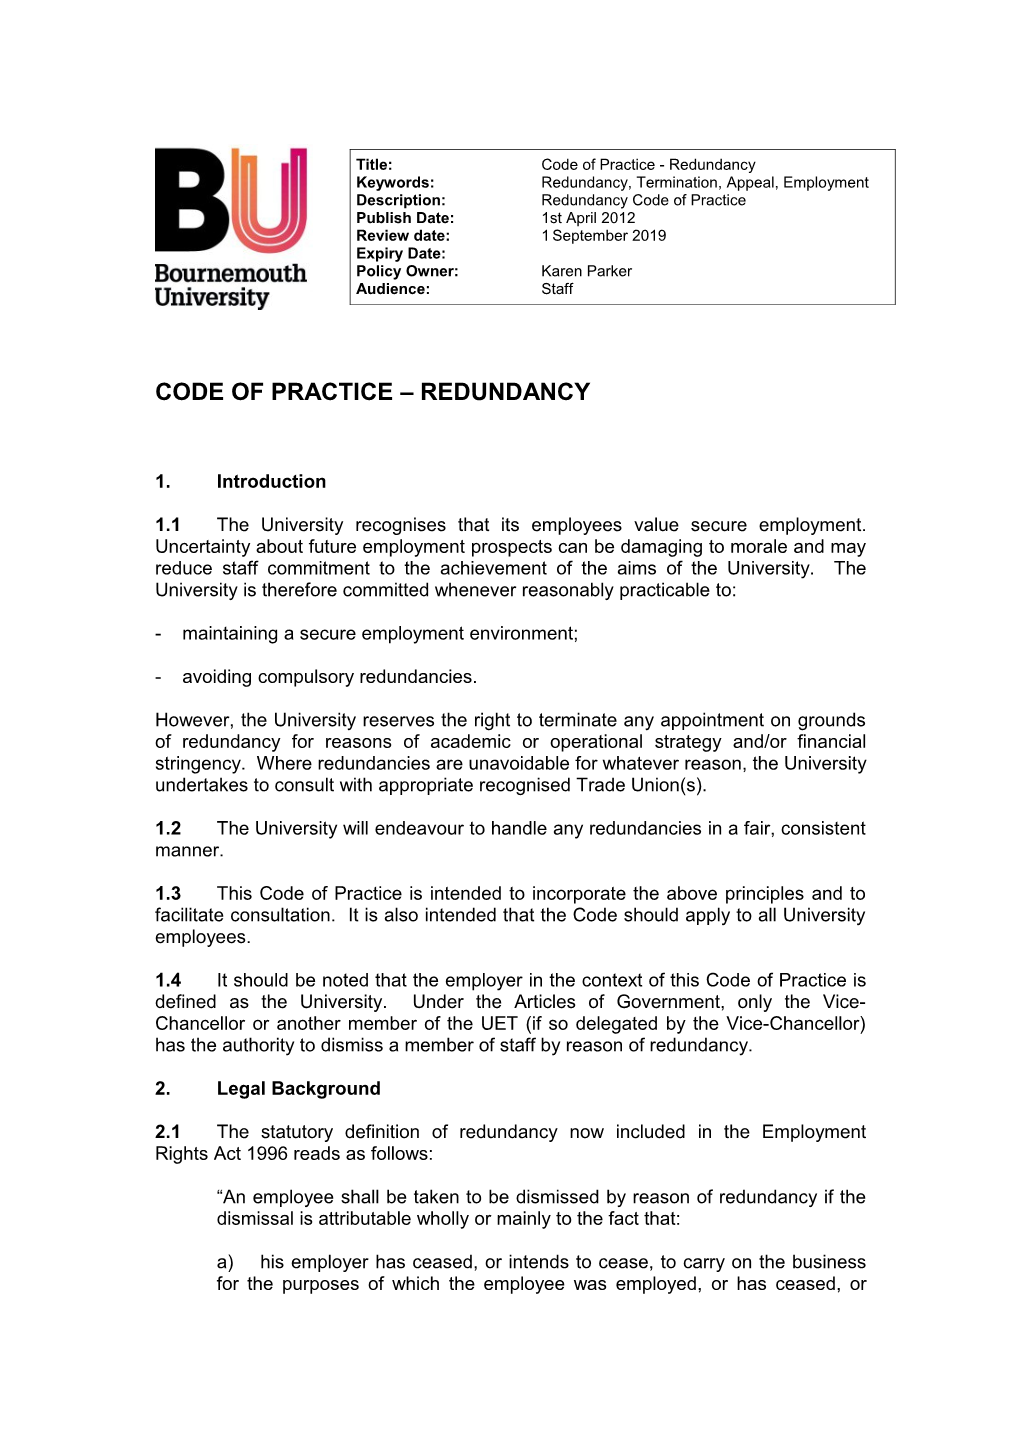 Code of Practice - Redundancy